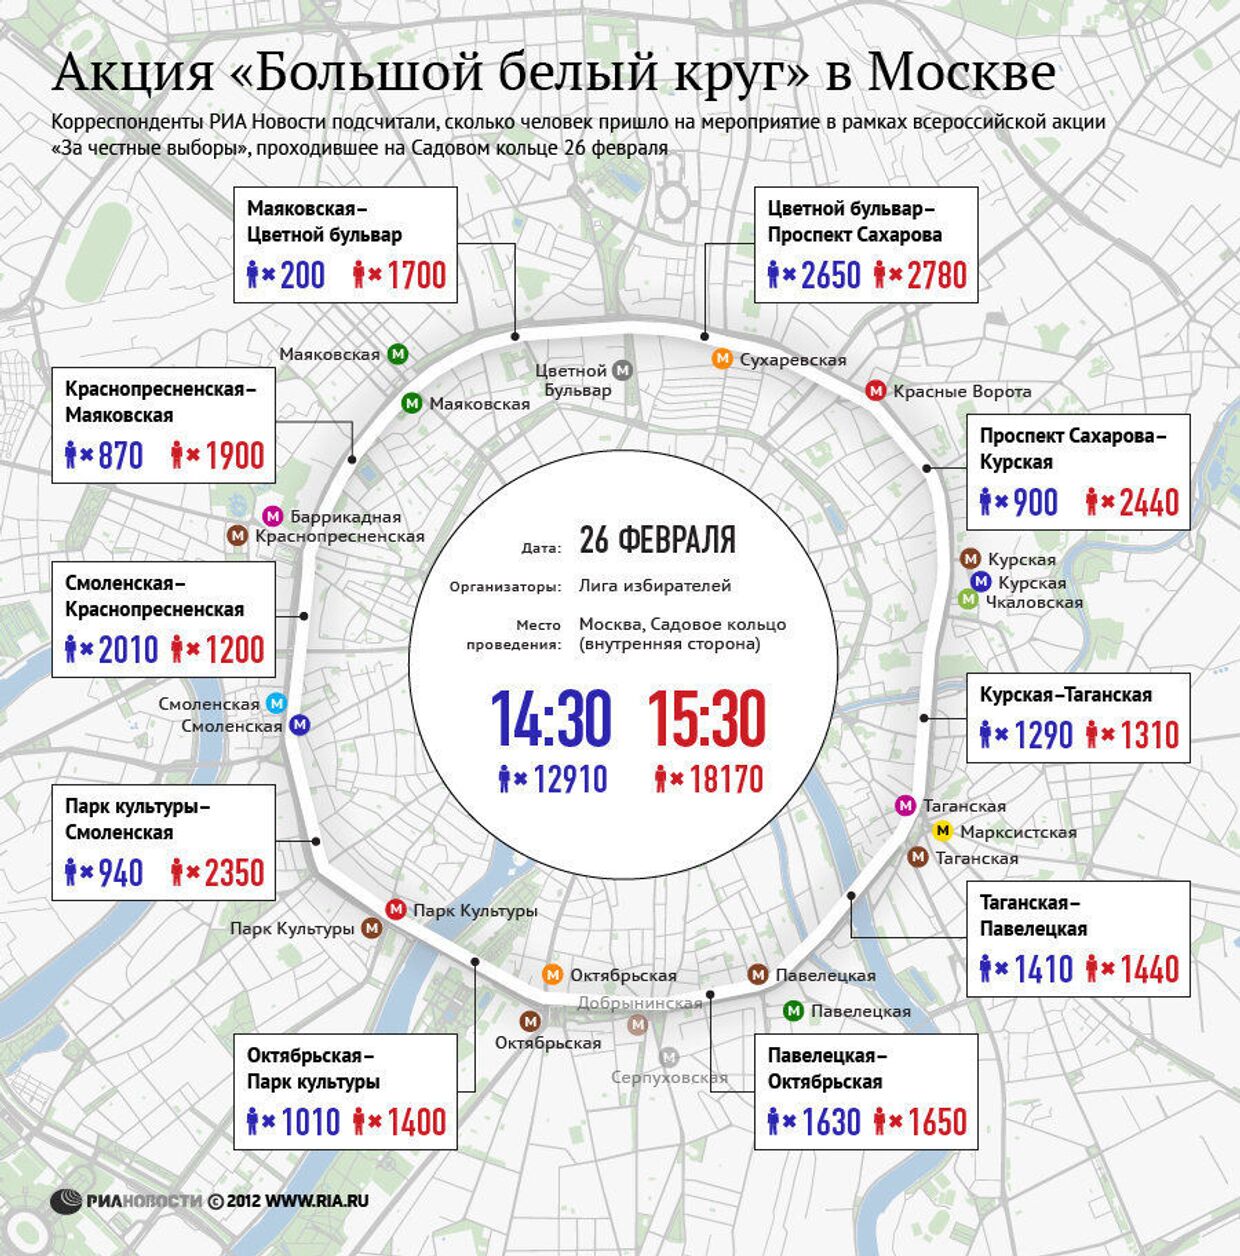 Оценка числа участников акции «Большой белый круг» в Москве